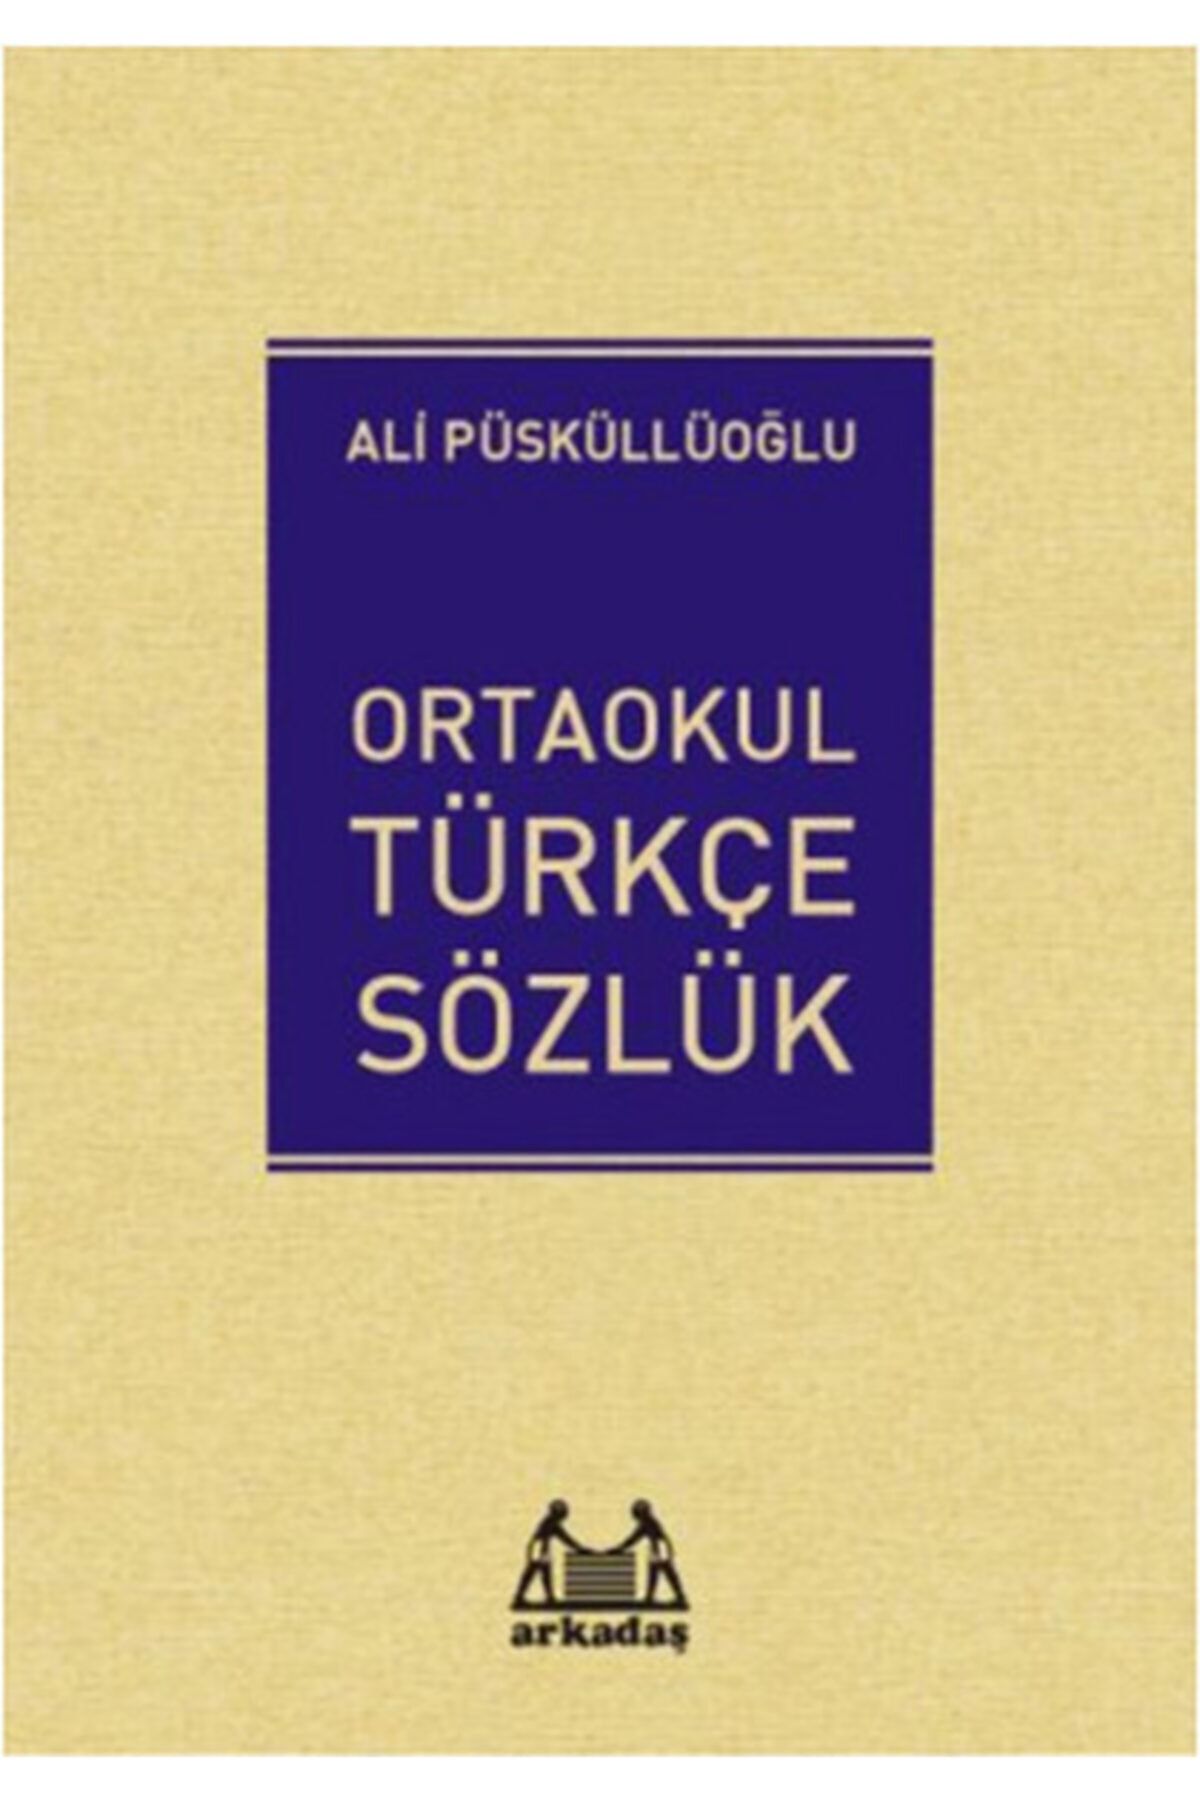 Arkadaş Yayıncılık Ortaokul Türkçe Sözlük